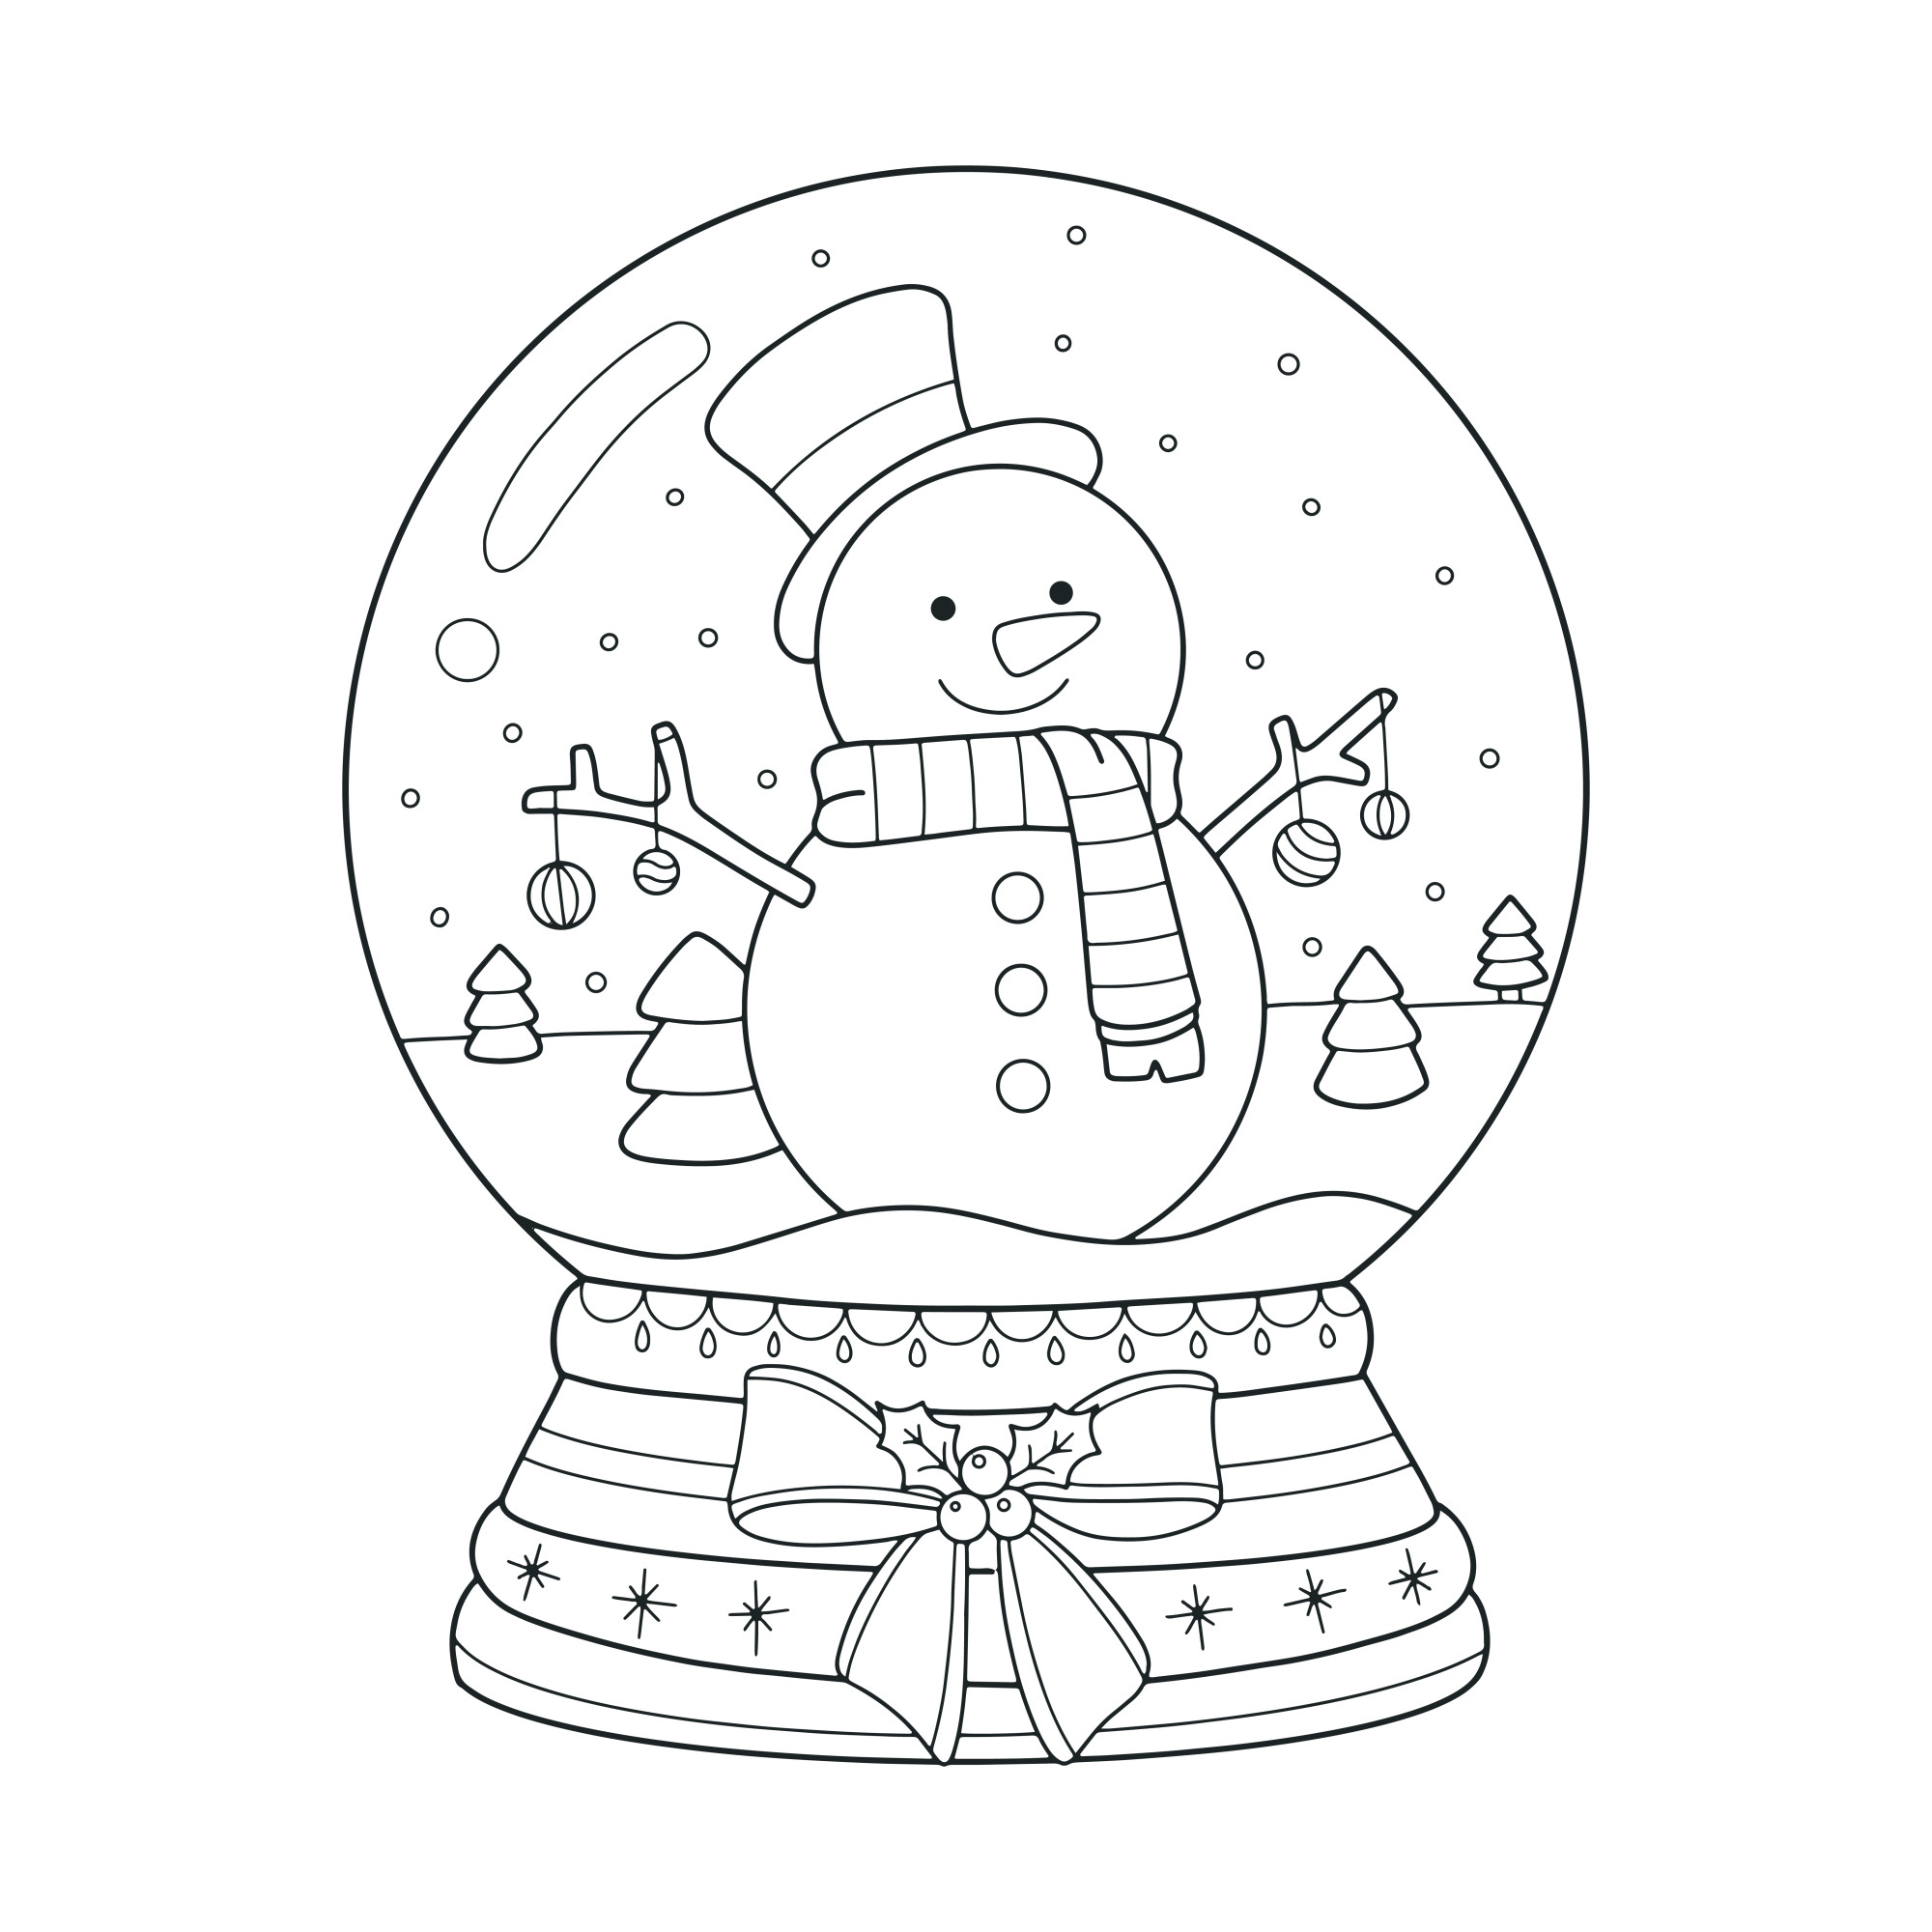 Раскраска для детей: новогодний стеклянный шар со снеговиком внутри